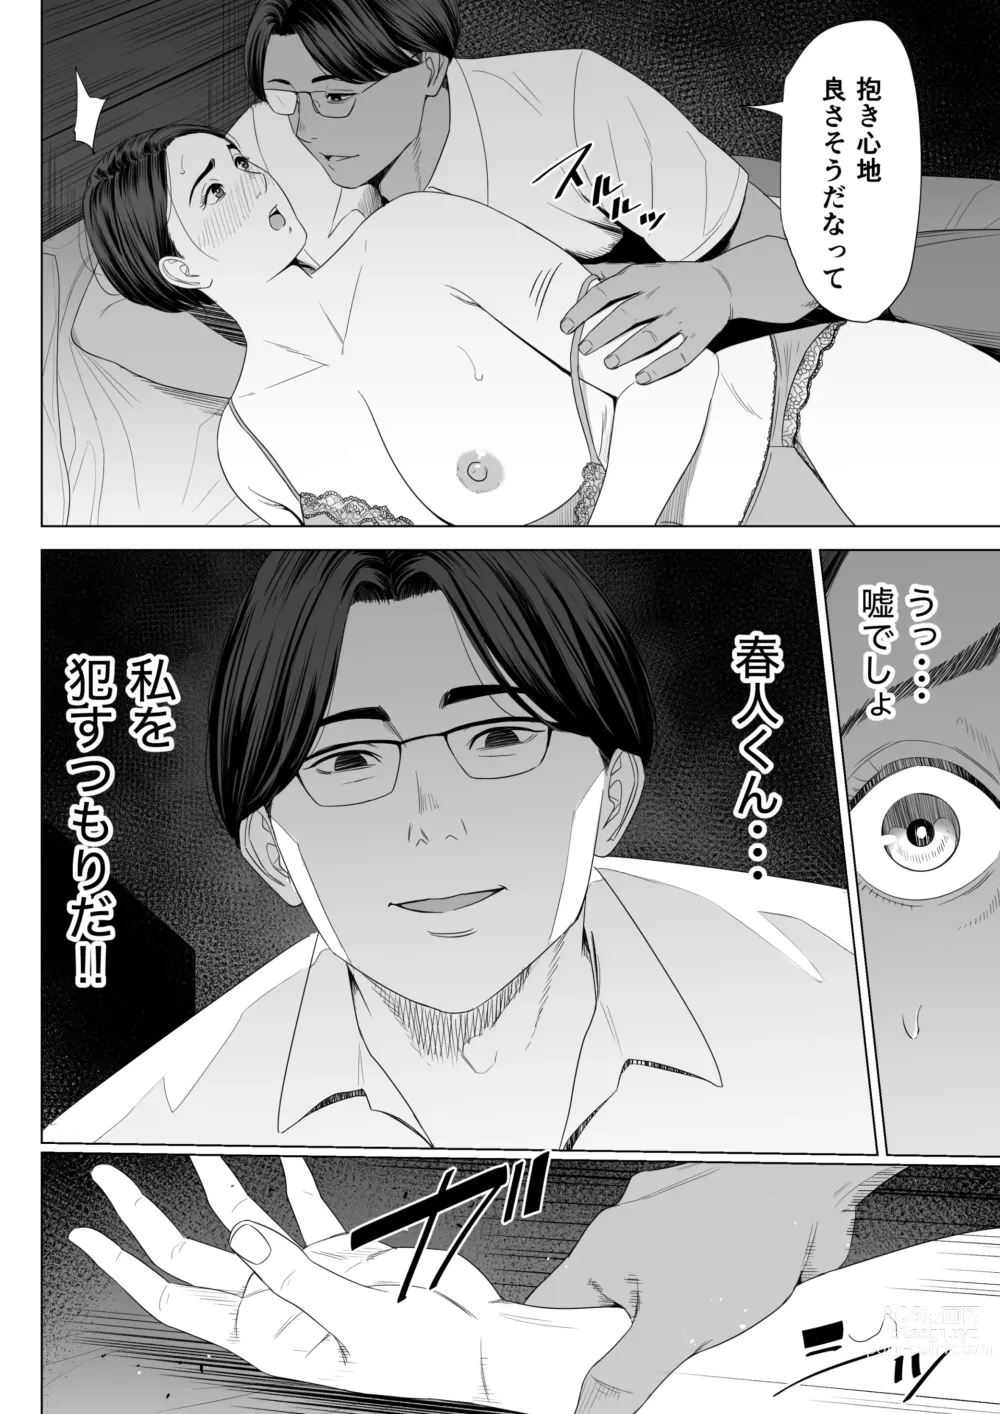 Page 15 of doujinshi Gibo no Tsukaeru Karada.